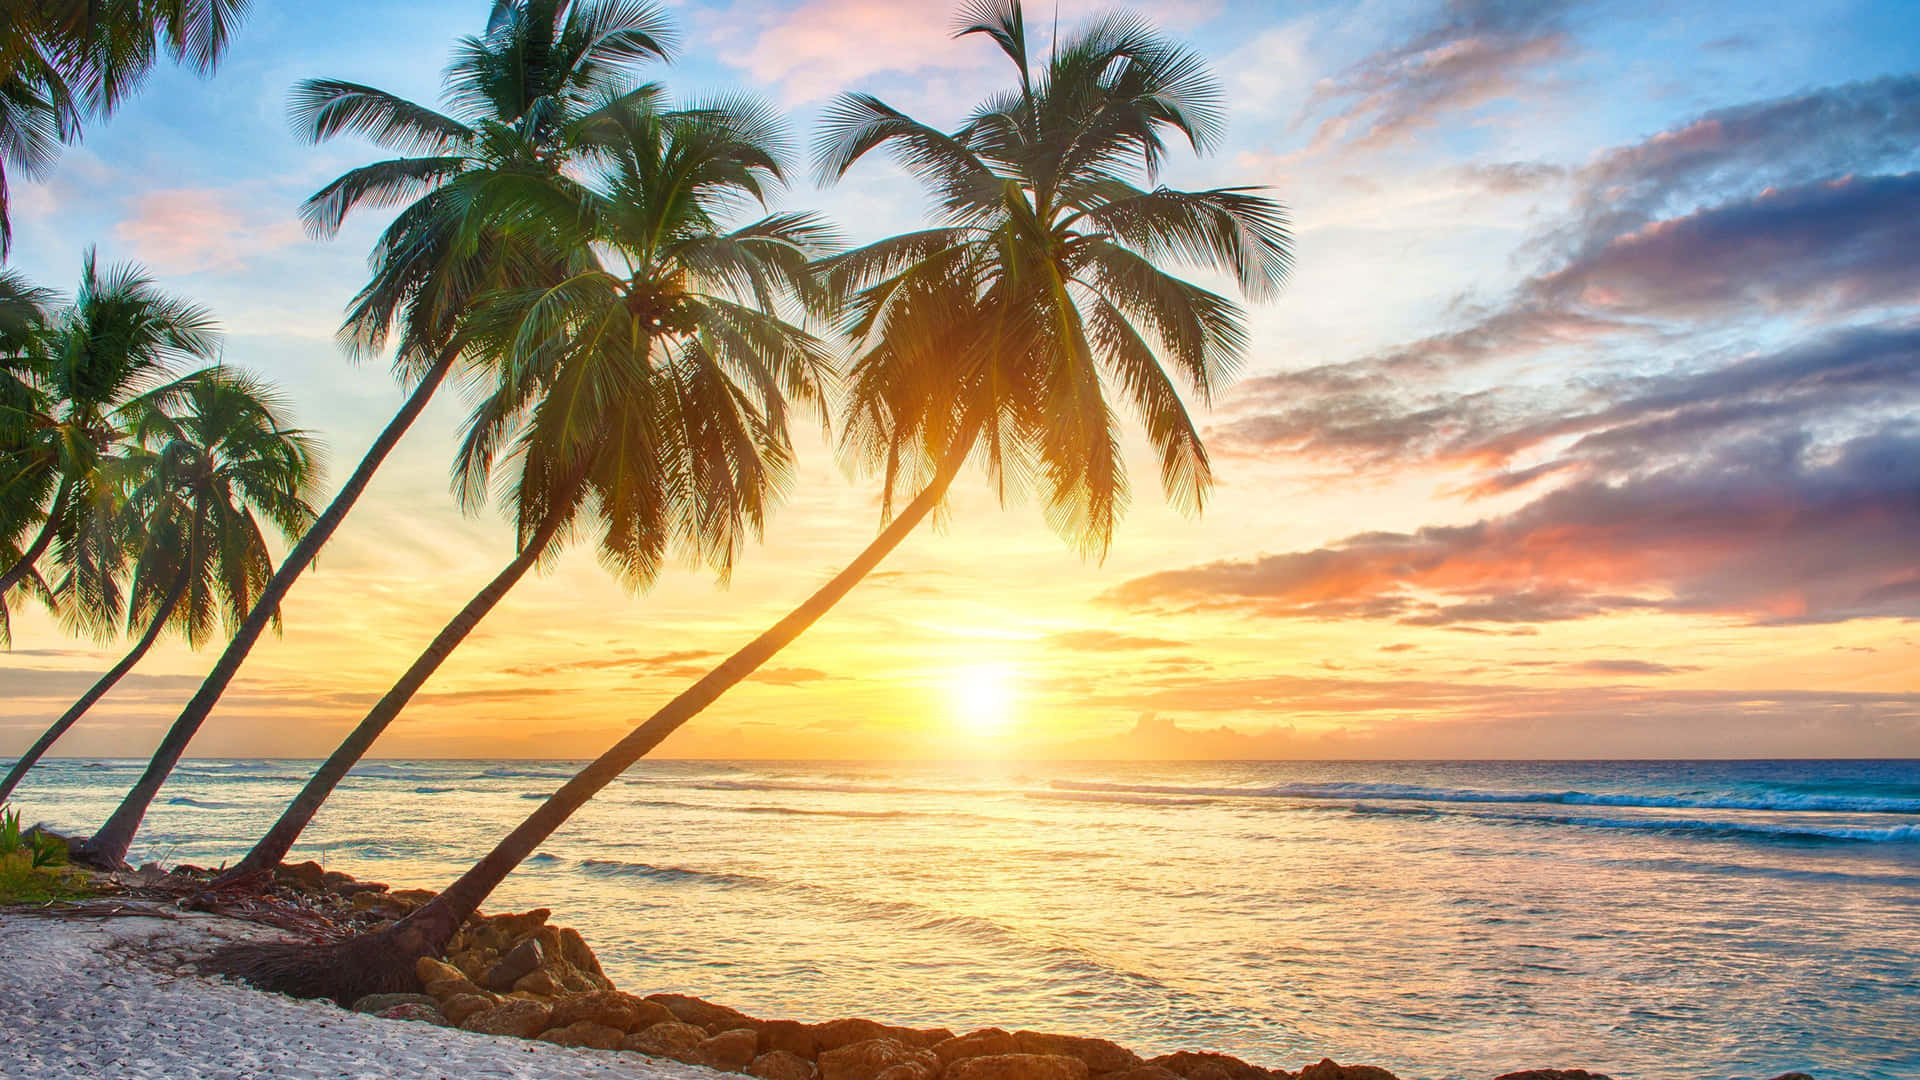 A Stunning Hawaiian Sunset Wallpaper